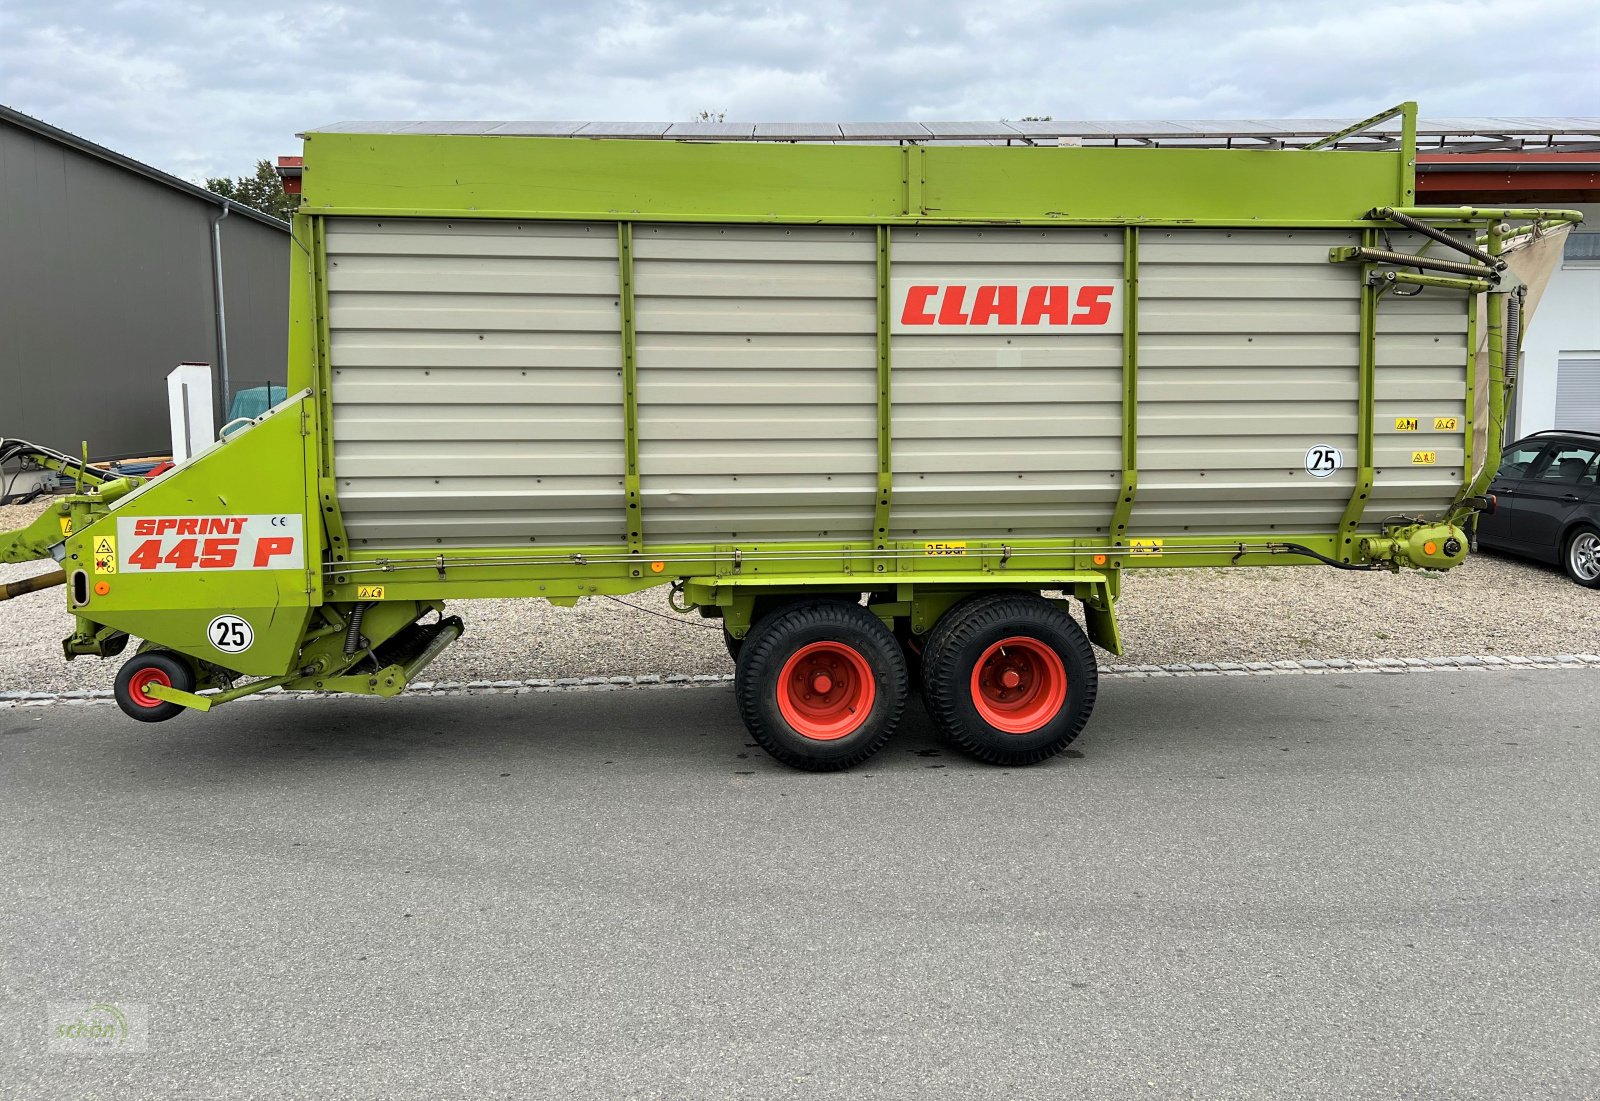 Ladewagen des Typs CLAAS Sprint 445 P mit Druckluftbremse - aus erster Hand - 40 km/h Zulassung möglich, Gebrauchtmaschine in Burgrieden (Bild 2)